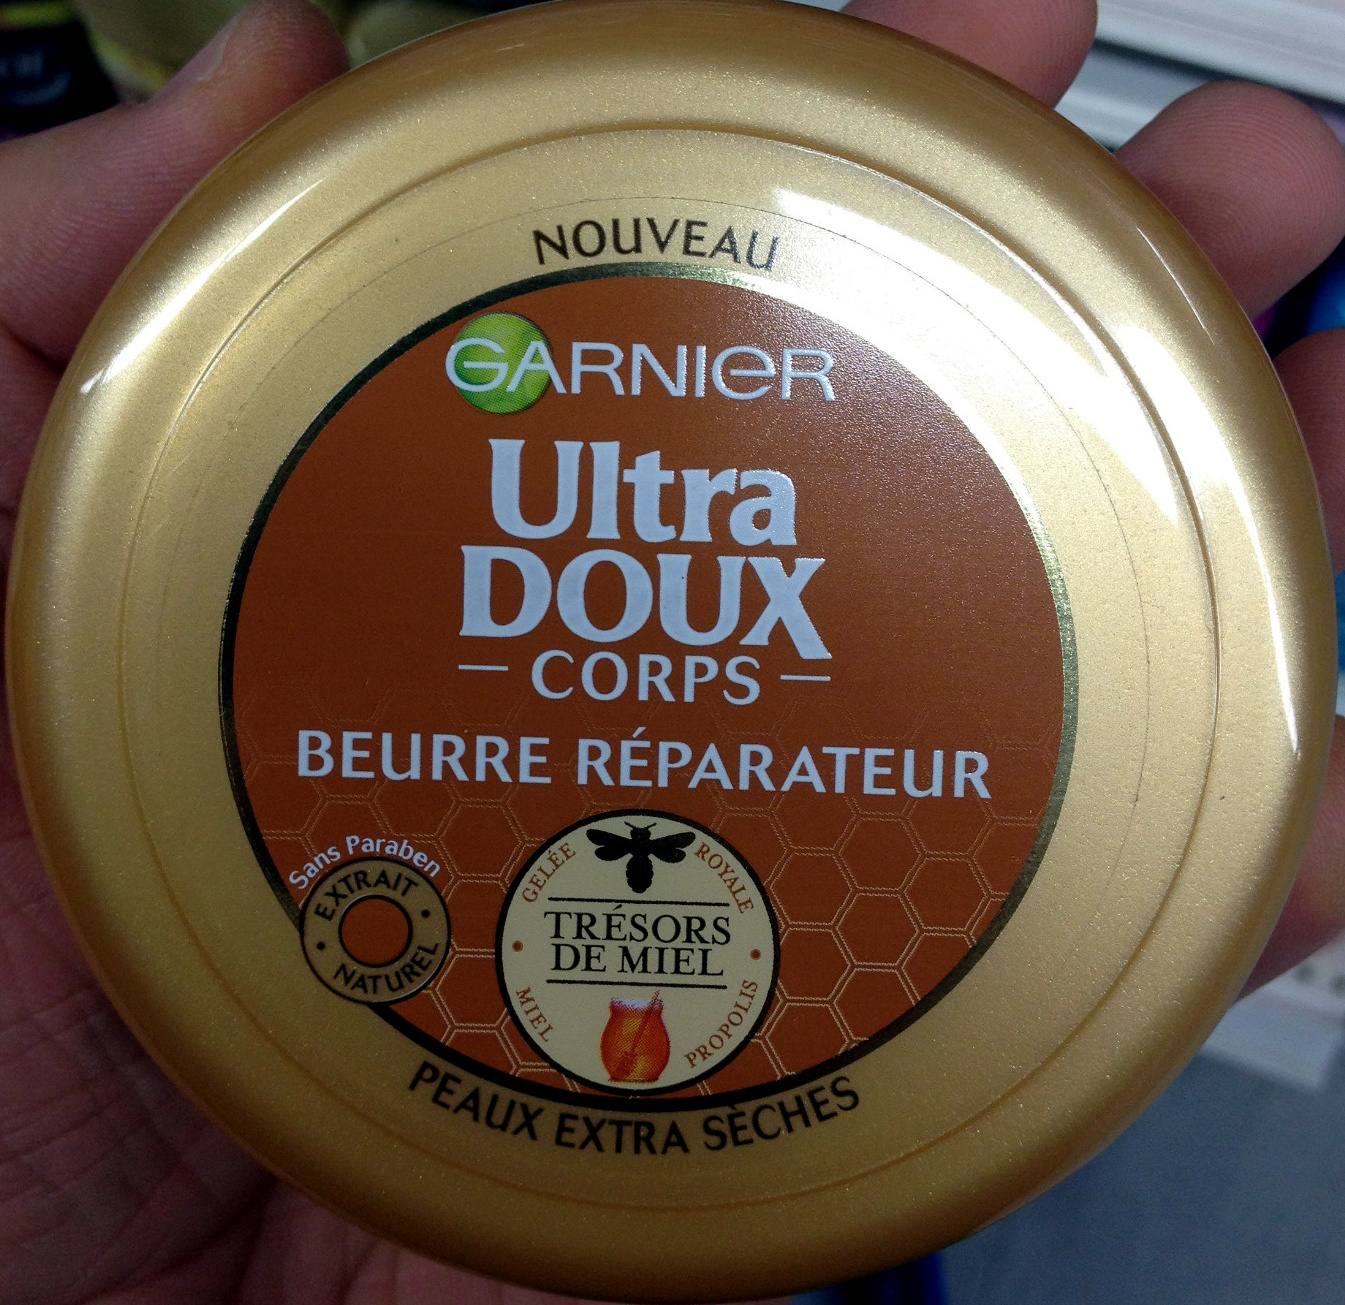 Ultra doux Corps - Beurre réparateur Trésors de Miel - Product - fr